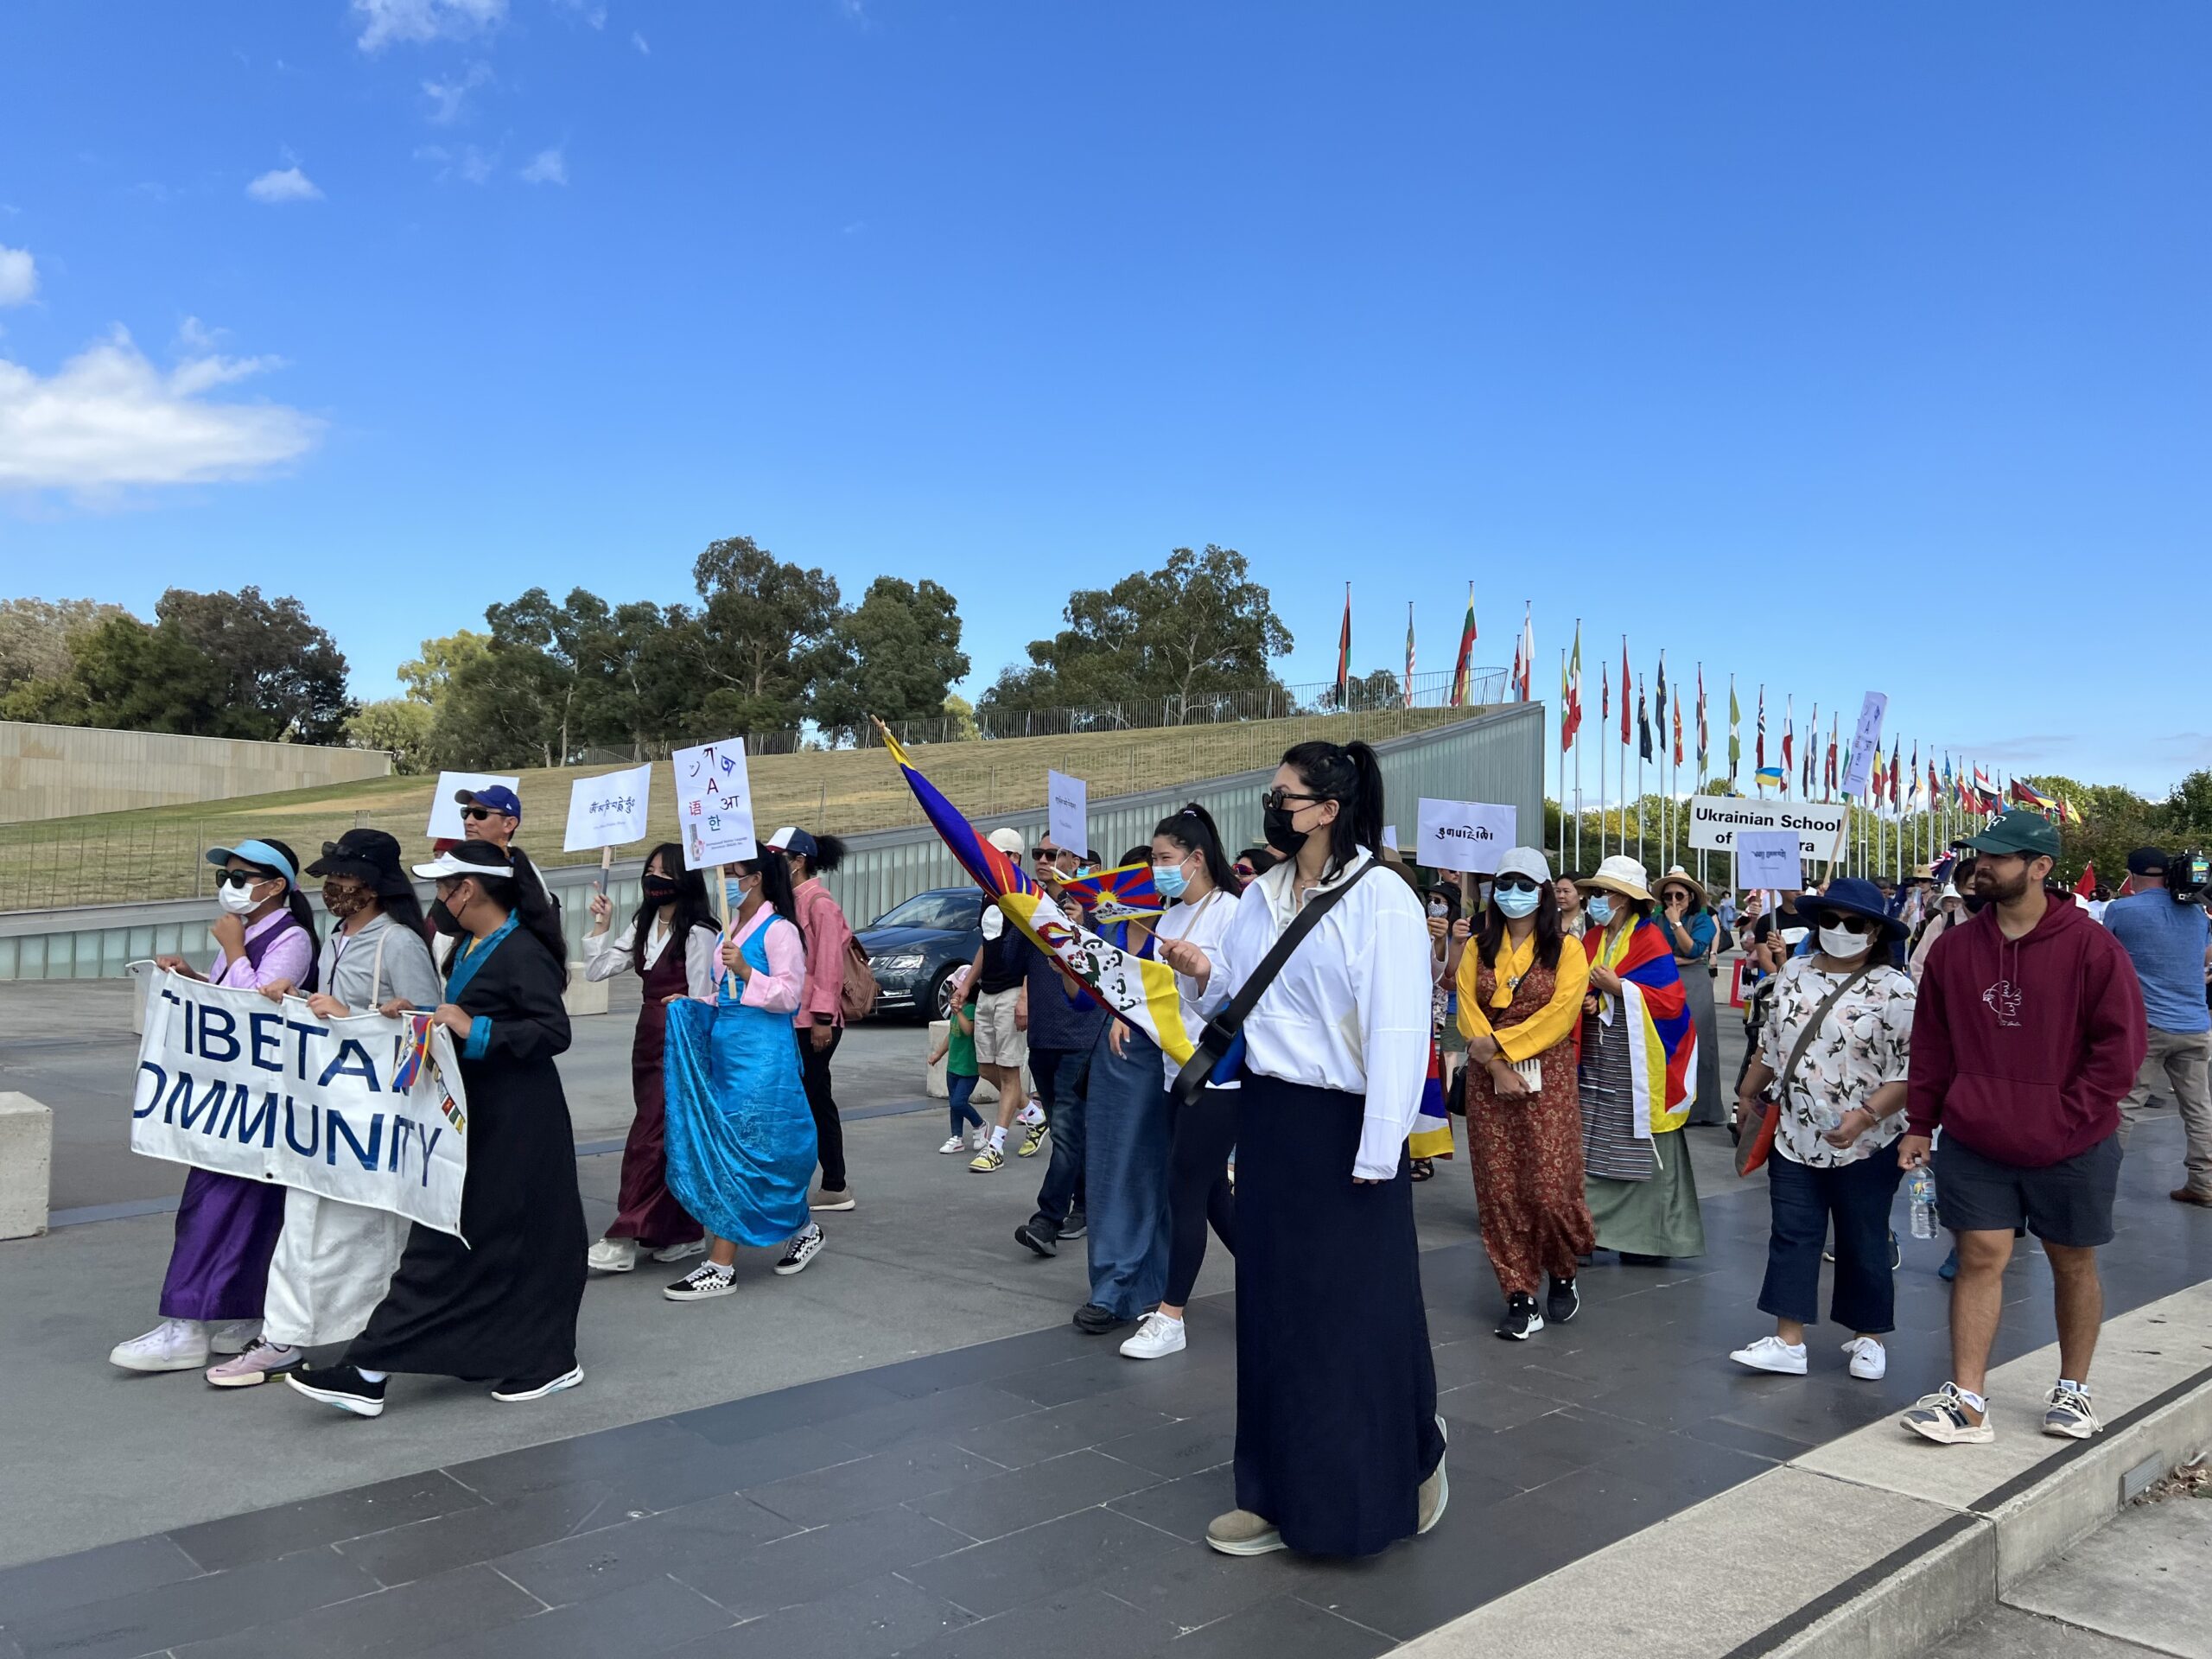 Canberra Membros da comunidade tibetana que participam do Dia Internacional da Língua Materna caminham em Canberra. Escalada 1 Os tibetanos de Canberra representam sua língua na Caminhada do Dia Internacional da Língua Materna na Austrália